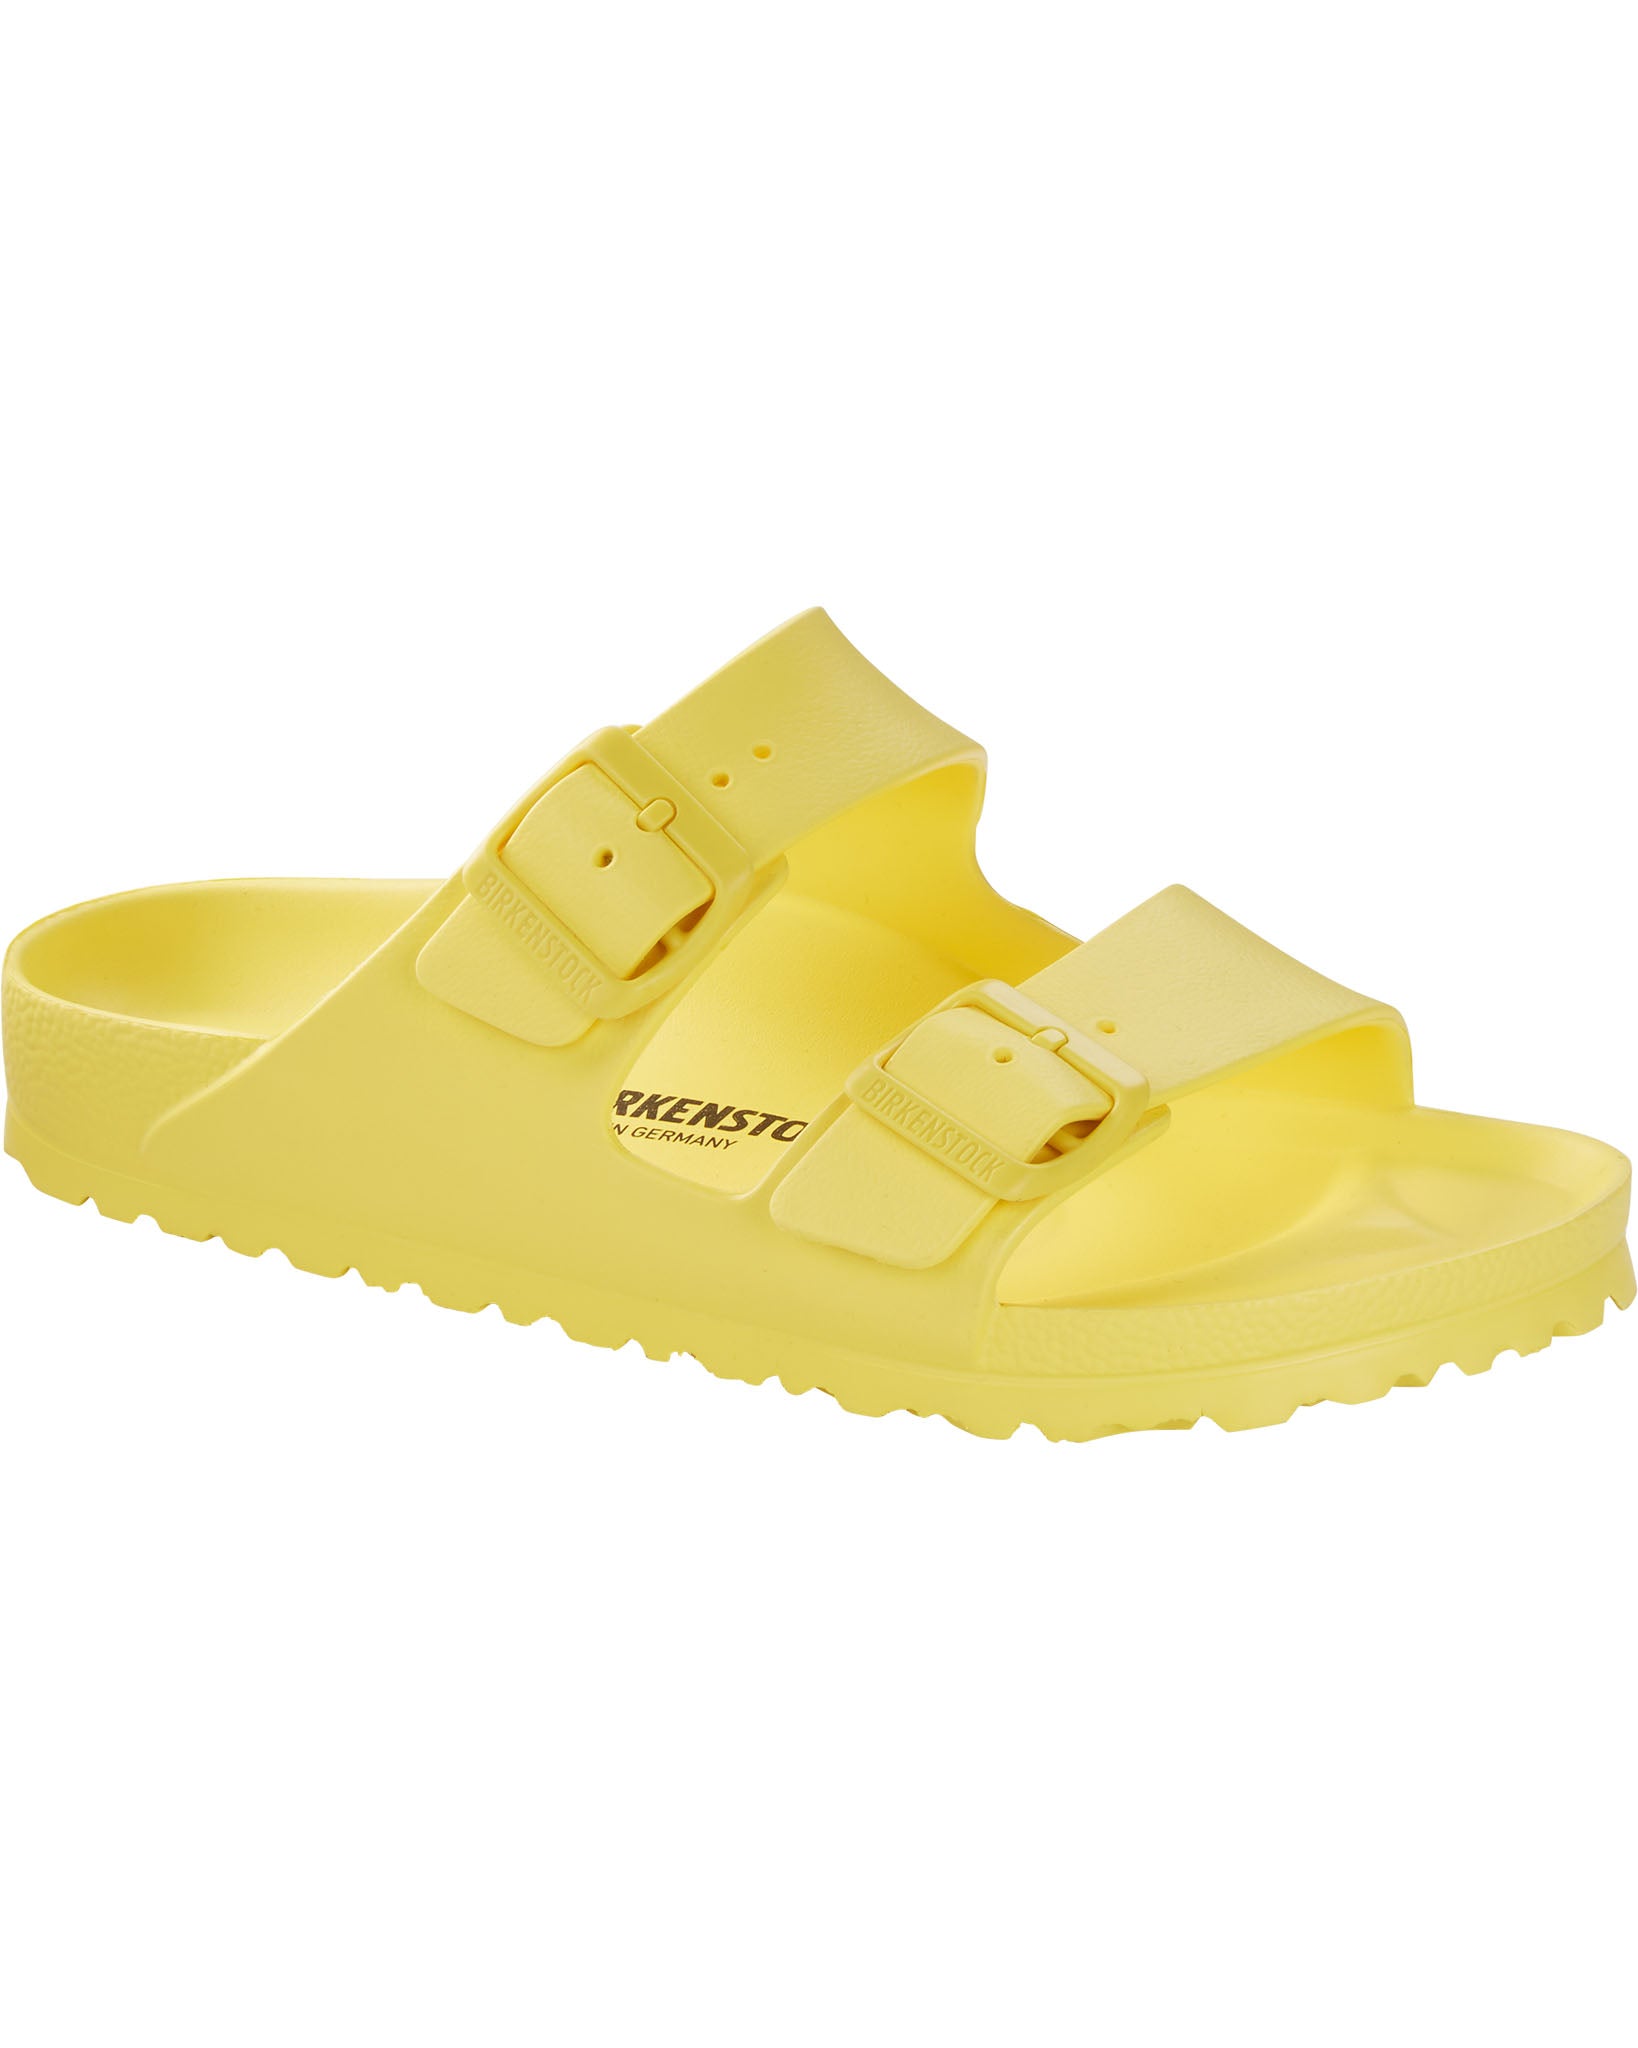 Arizona EVA Vibrant Yellow Sandals